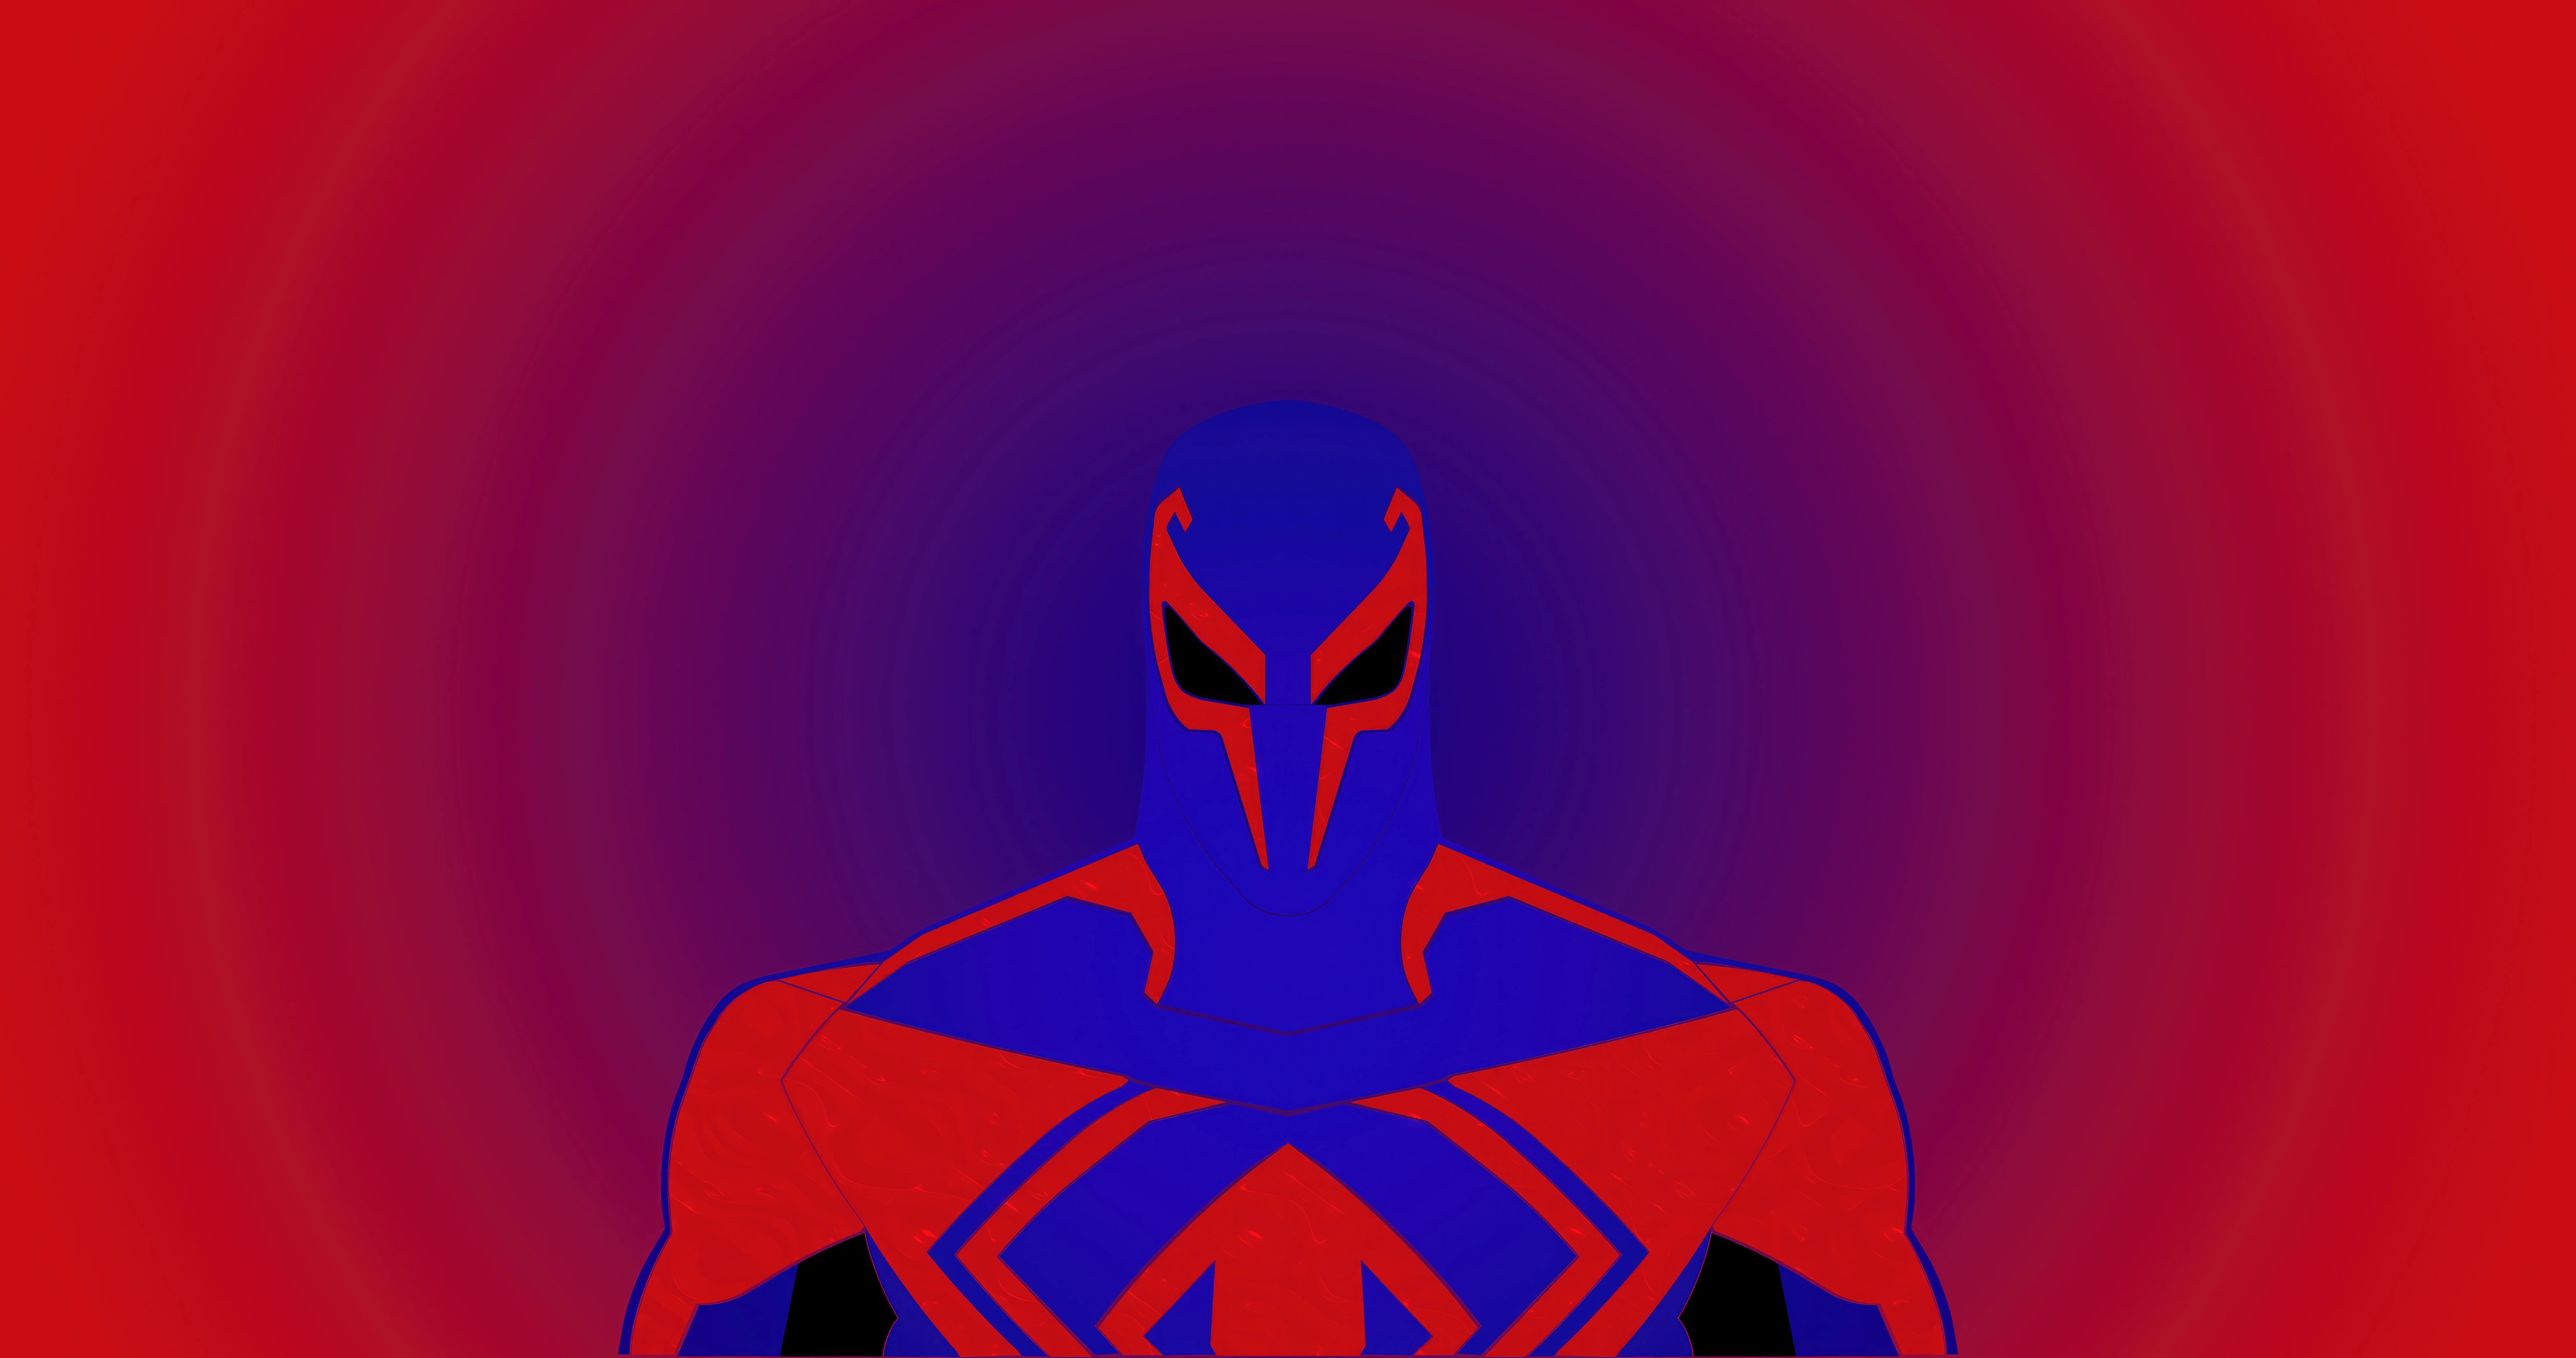 spider man 2099 miguel o hara minimal red 5k uv.jpg